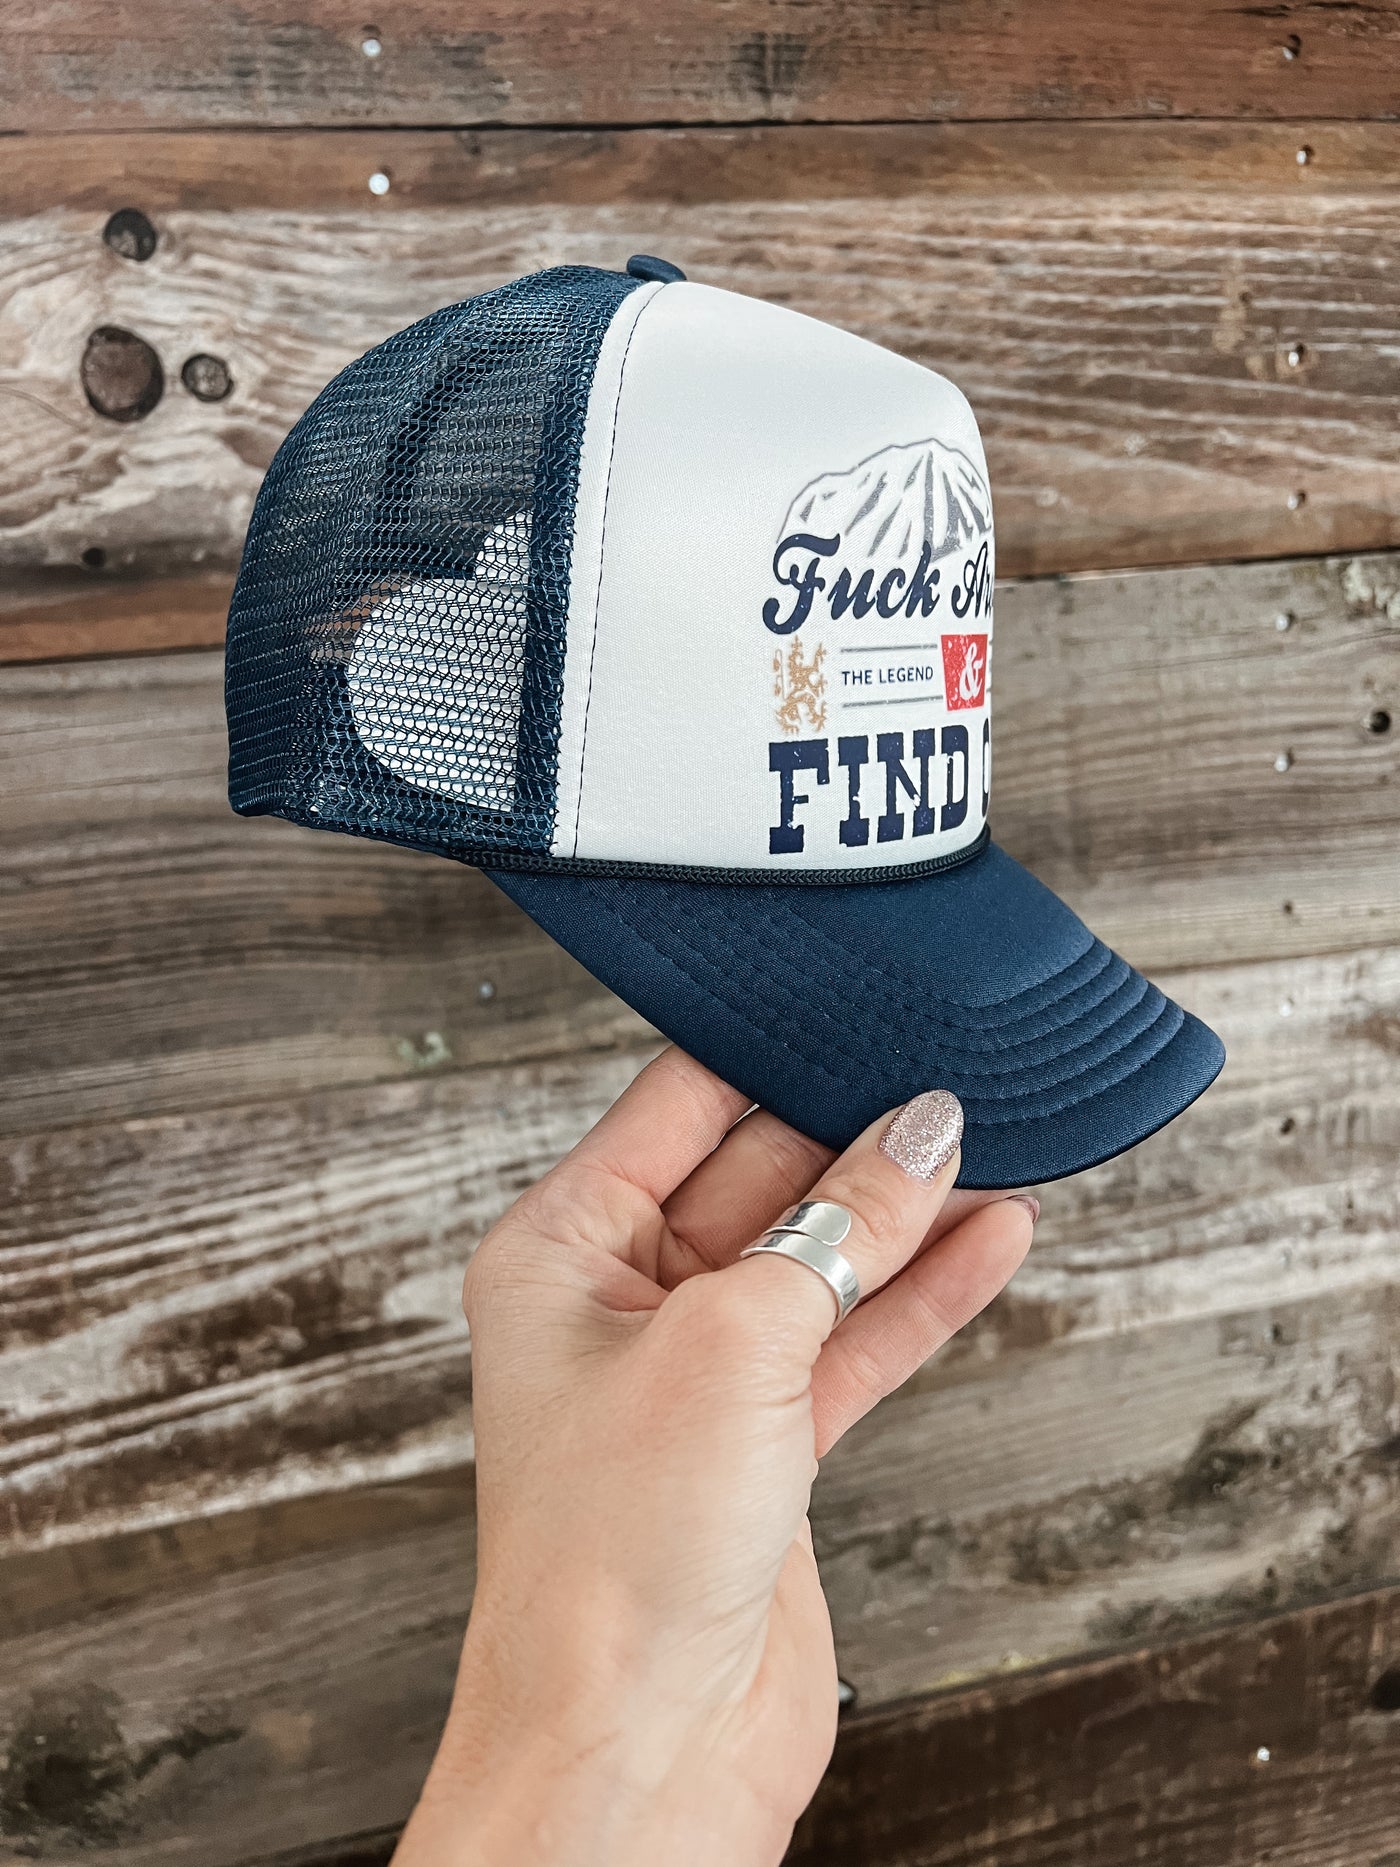 F Around & Find Out Trucker Hat - Blue